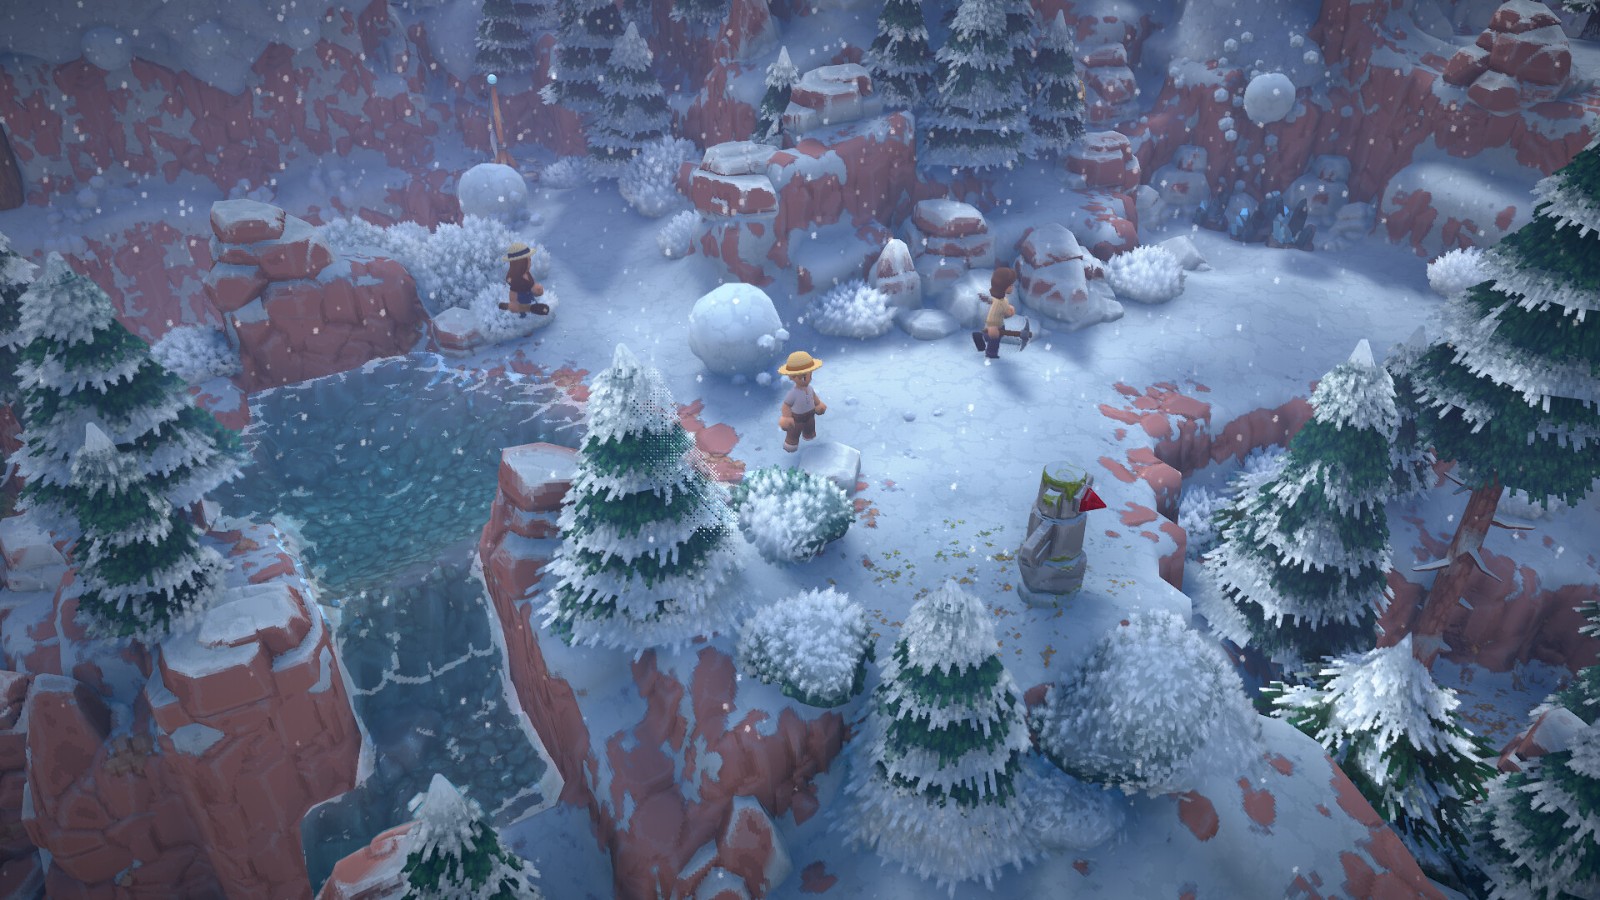 農業模擬《魯瑪島》上架Steam 年內發售